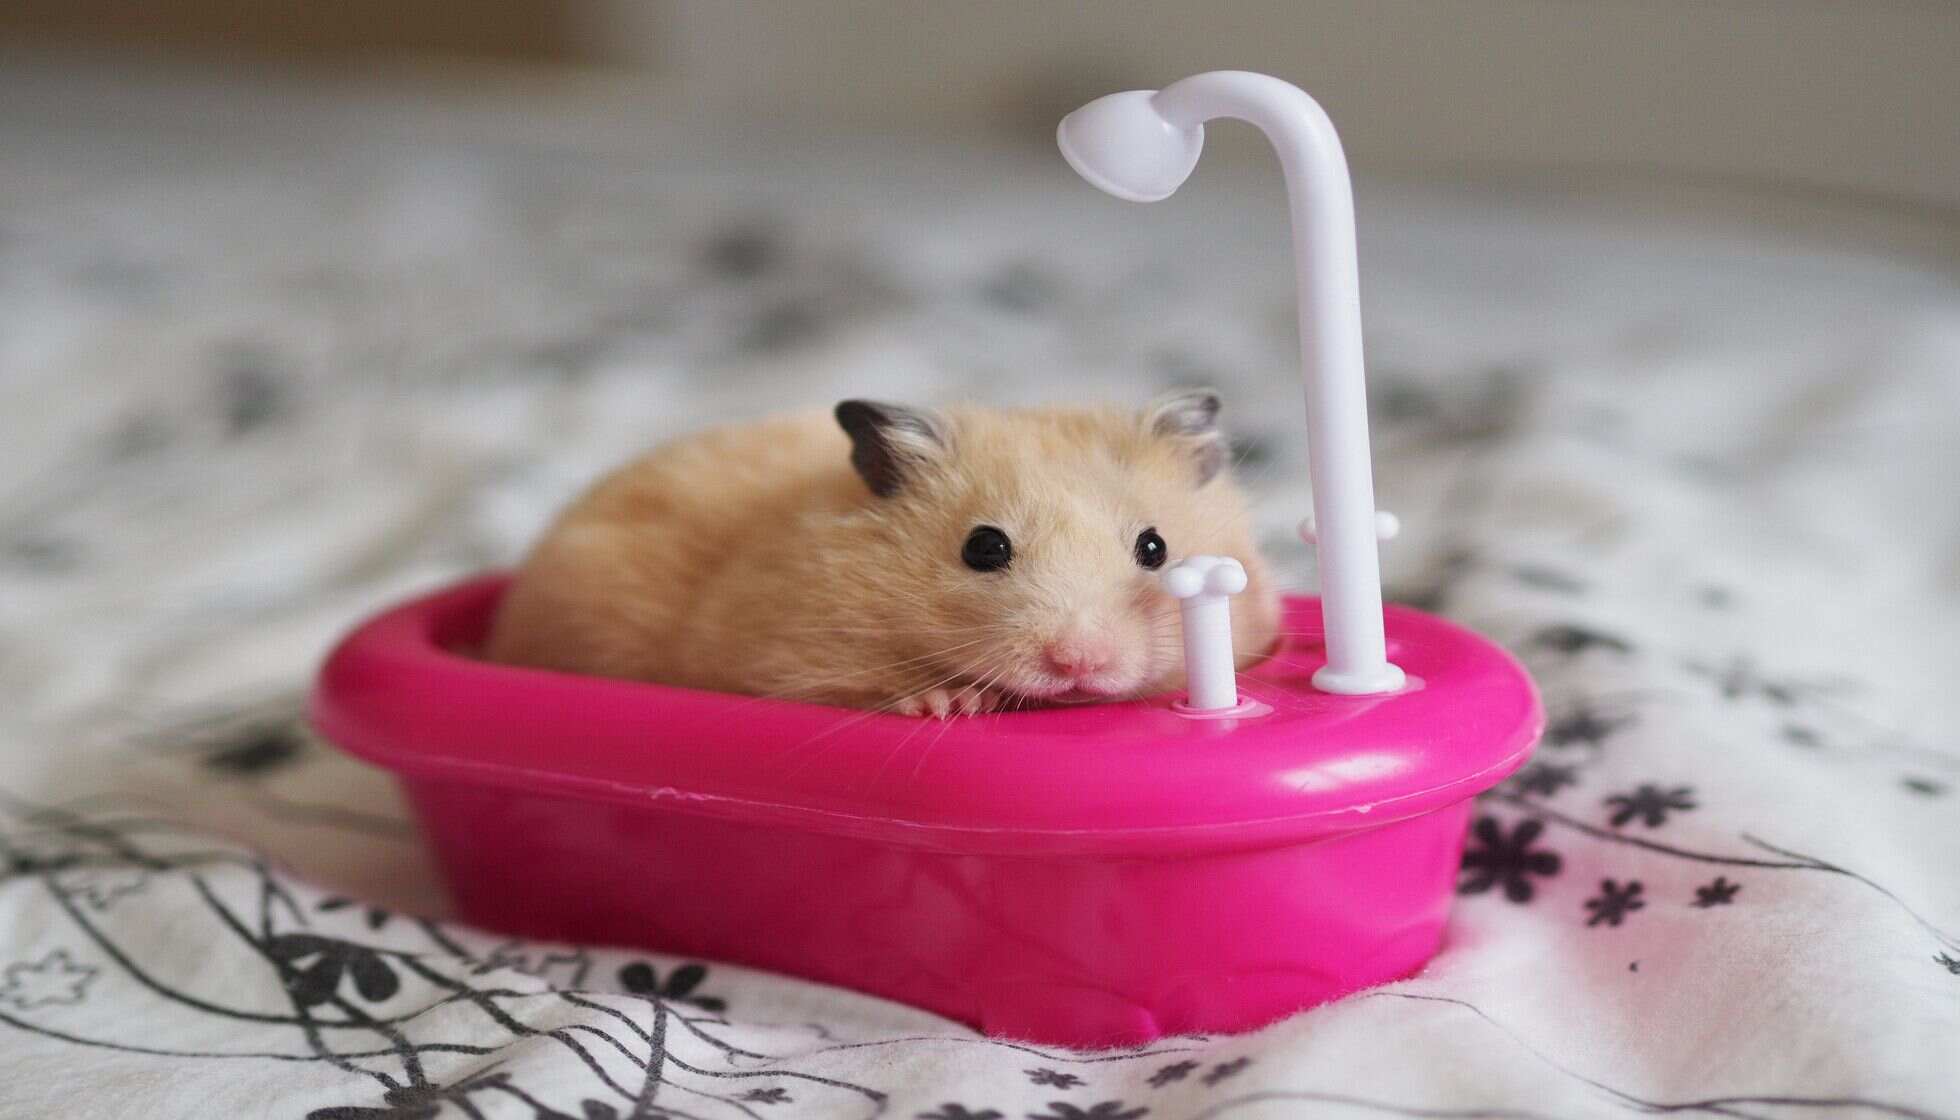 cara memandikan hamster harus dipahami dengan baik agar hamster sehat dan bersih